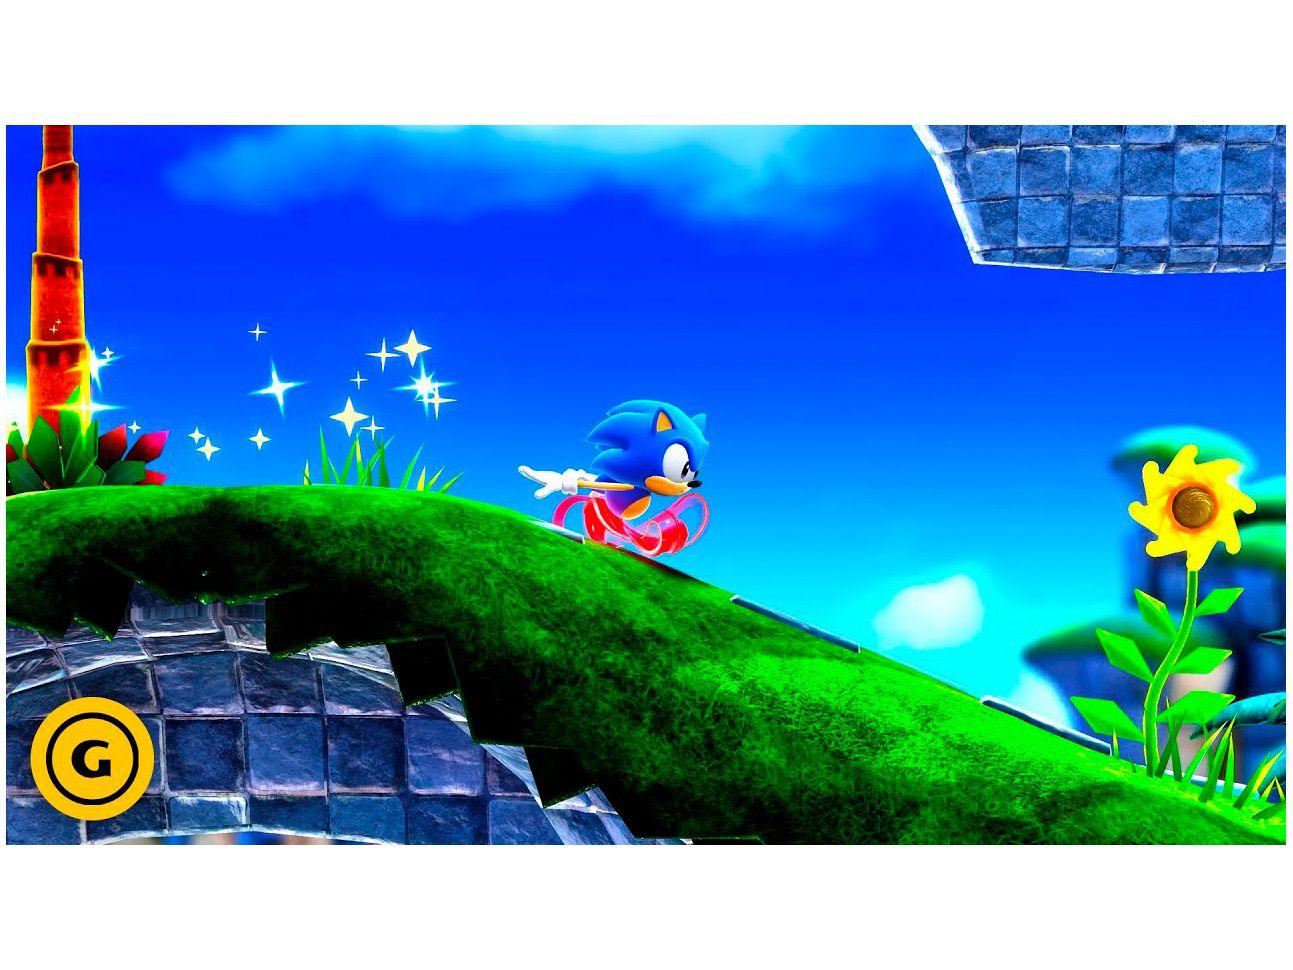 O NOVO Jogo do SONIC no PS5 !! - Sonic Superstars - O Início 